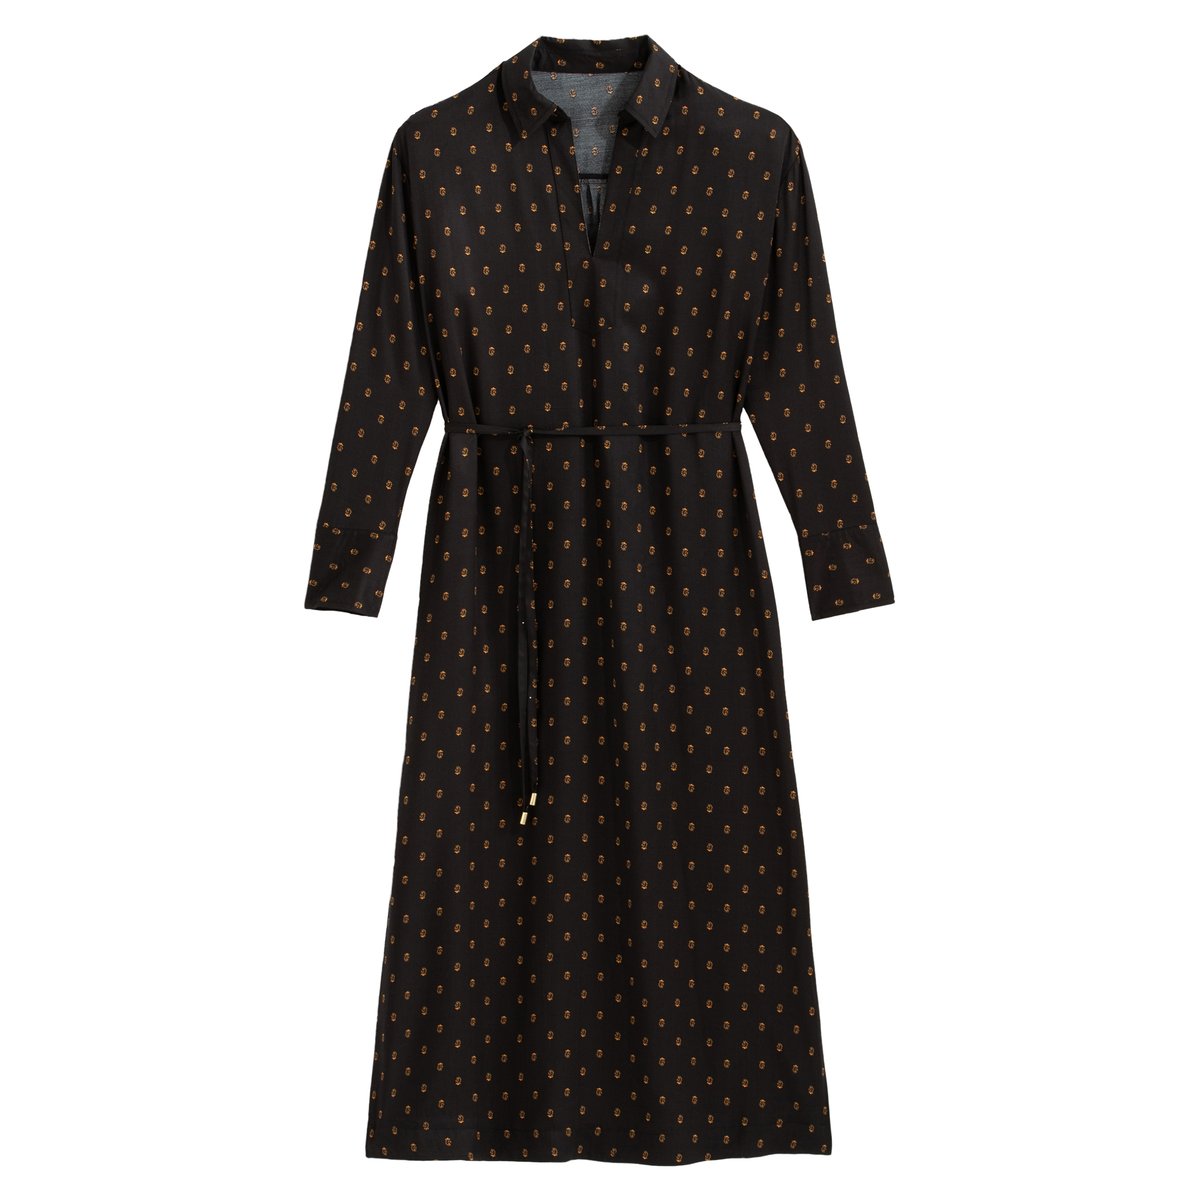 Платье-рубашка La Redoute Длинное с длинными рукавами 36 (FR) - 42 (RUS) черный, размер 36 (FR) - 42 (RUS) Длинное с длинными рукавами 36 (FR) - 42 (RUS) черный - фото 5